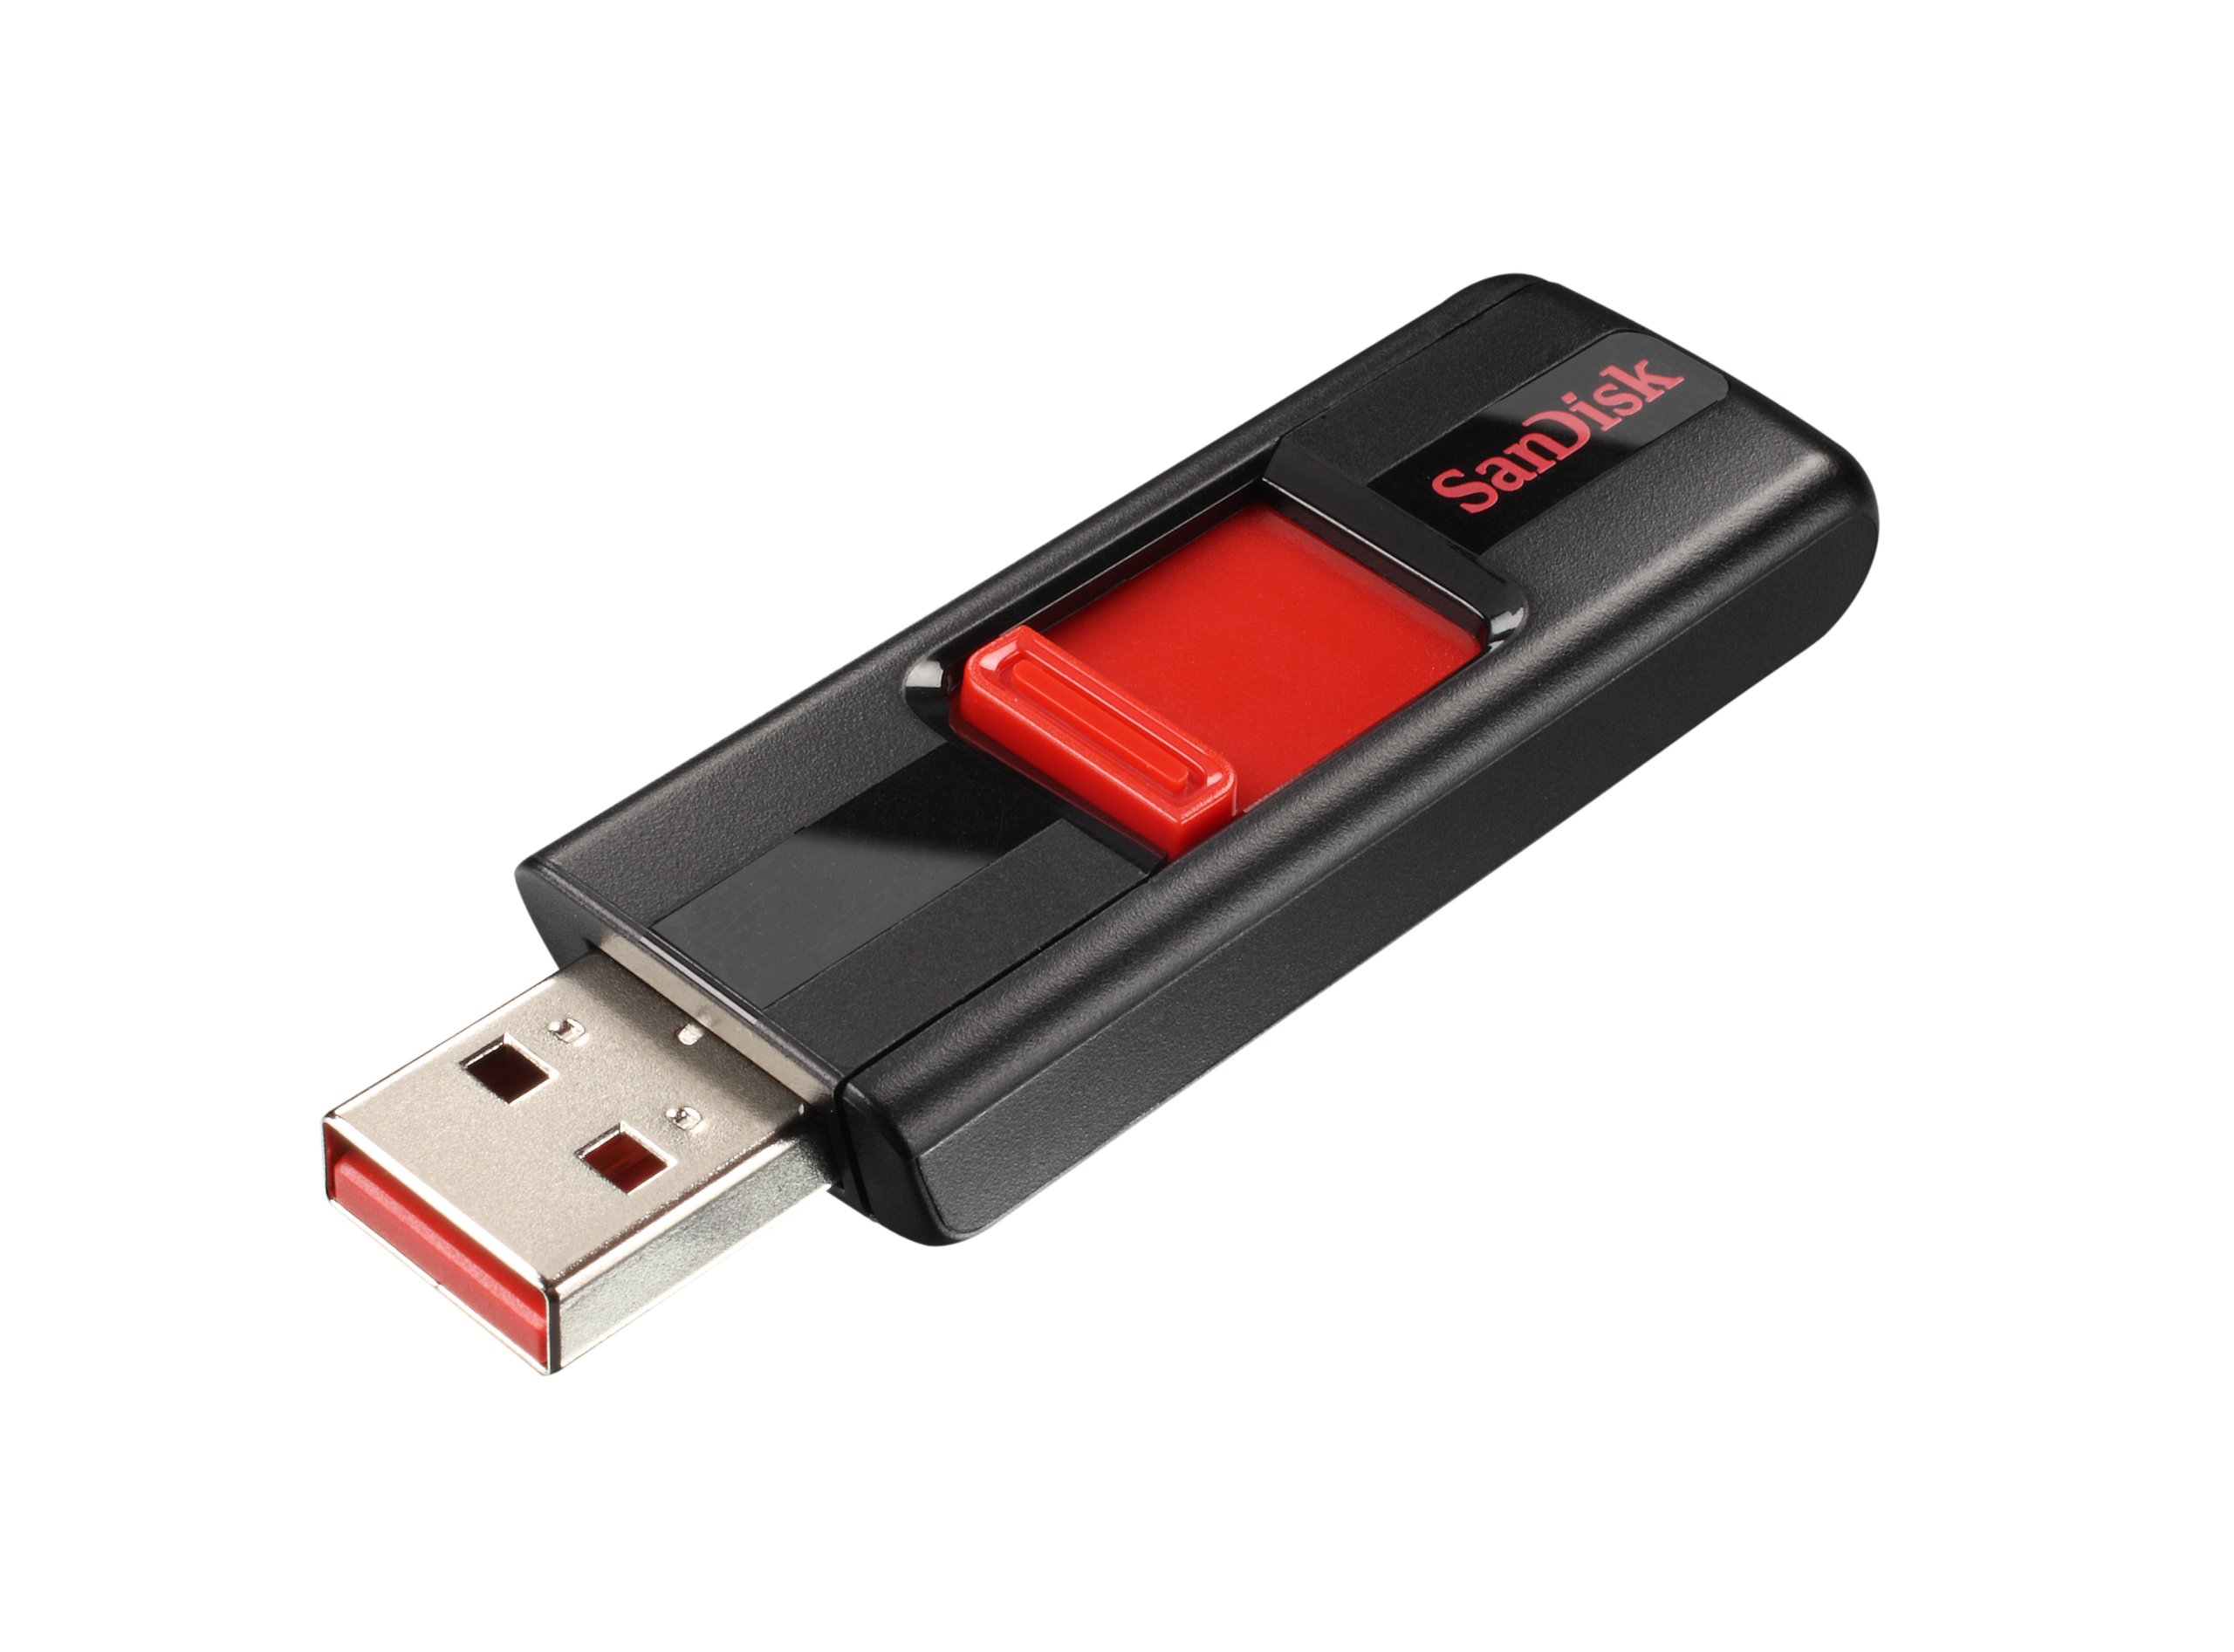 SanDisk 64GB Cruzer USB 2.0 Flash Drive, Frustration-Free Packaging - SDCZ36-064G-AFFP